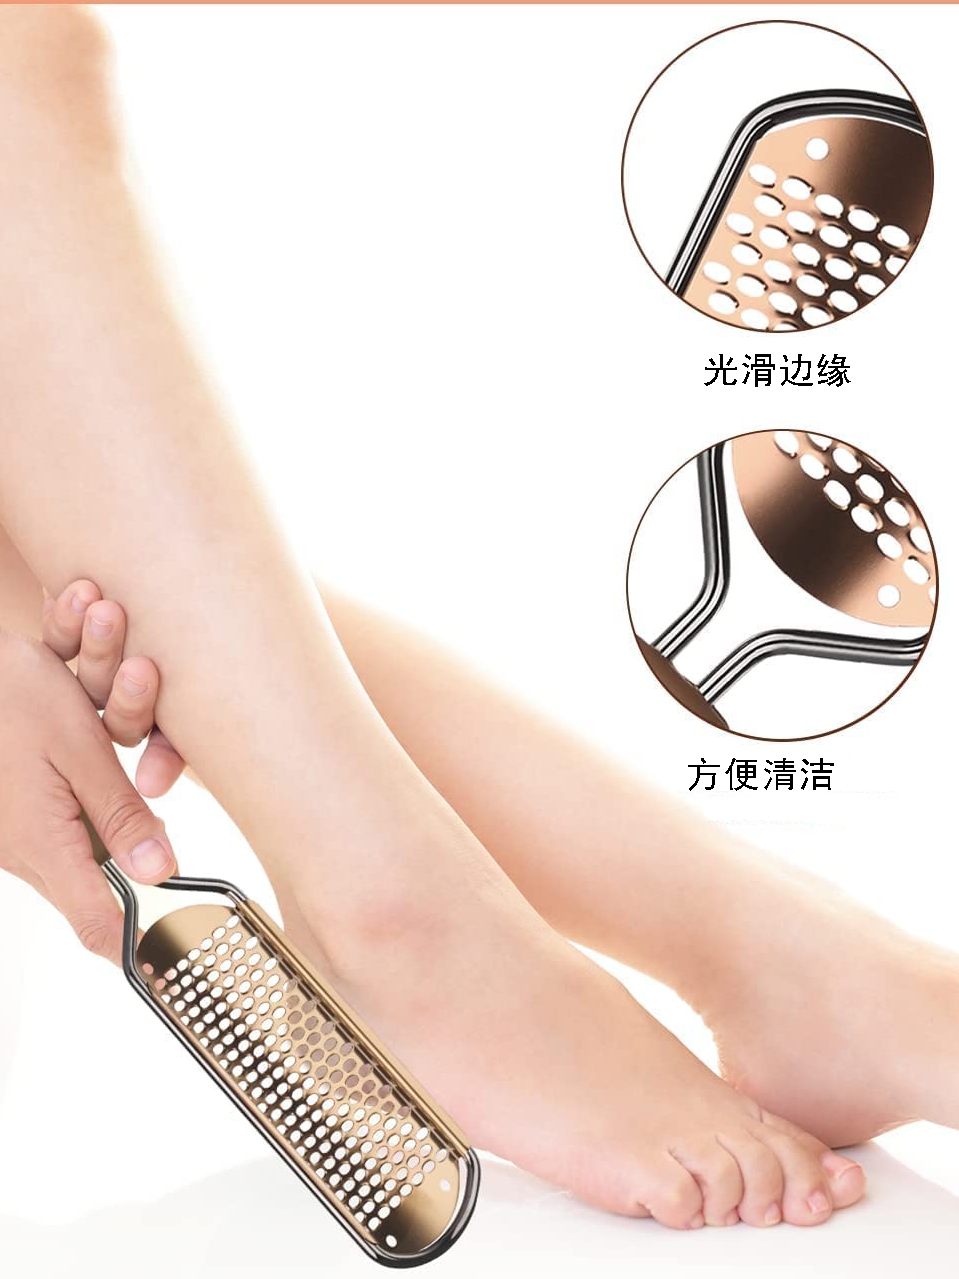 脚底光滑不锈钢脚板锉去脚皮硬茧搓脚板去脚皮刷足部角质清洁工具